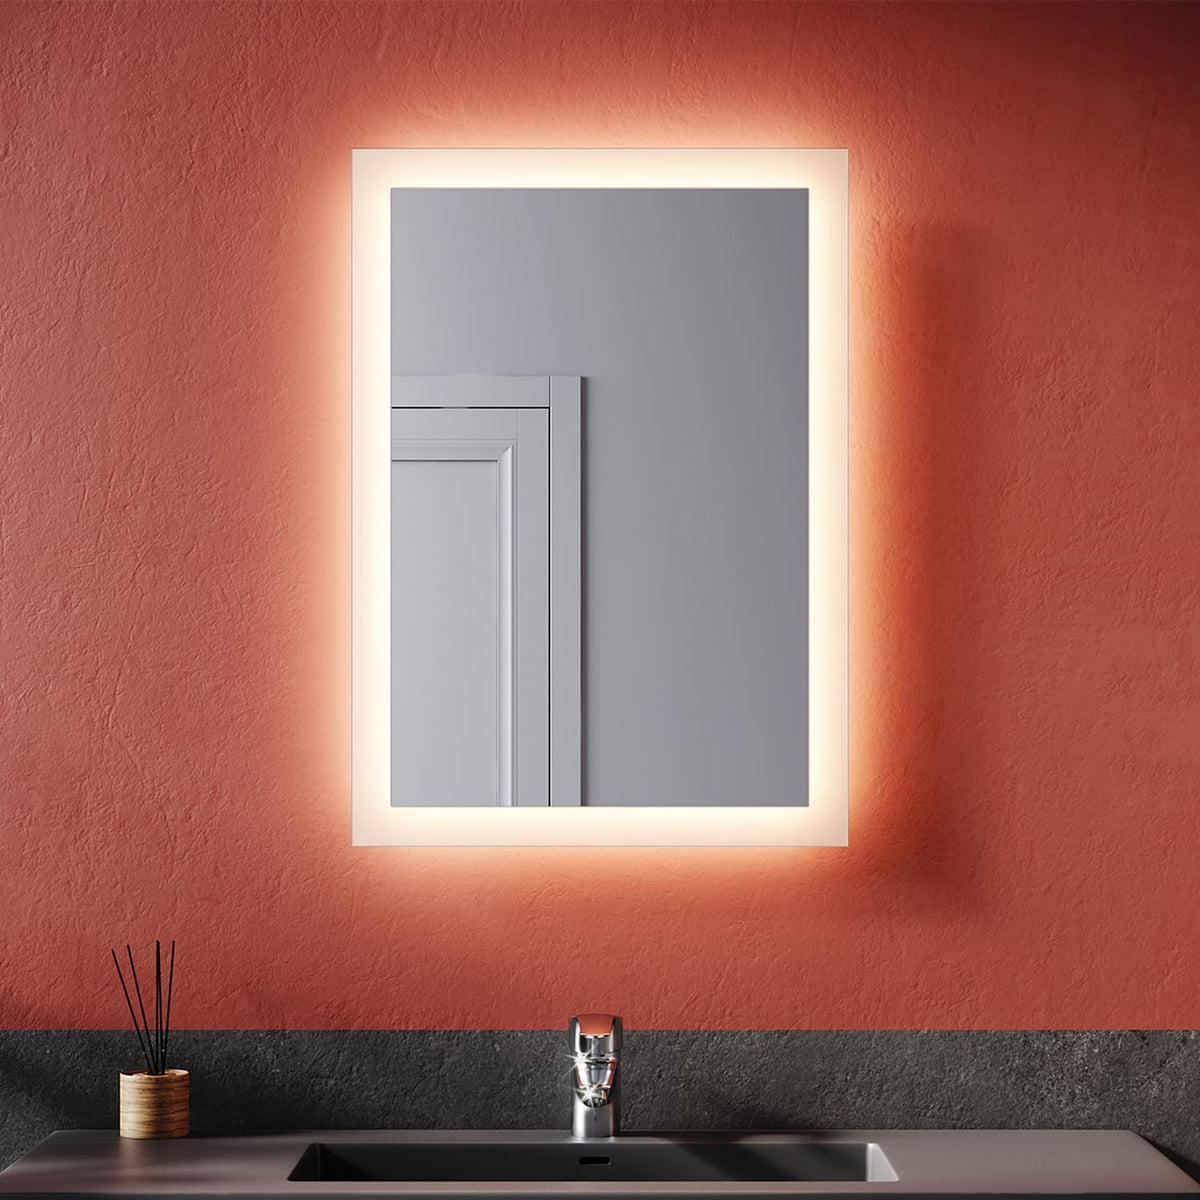 SONNI Badspiegel mit LED Beleuchtung Badezimmerspiegel Wandspiegel Lichtspiegel 50x70cm